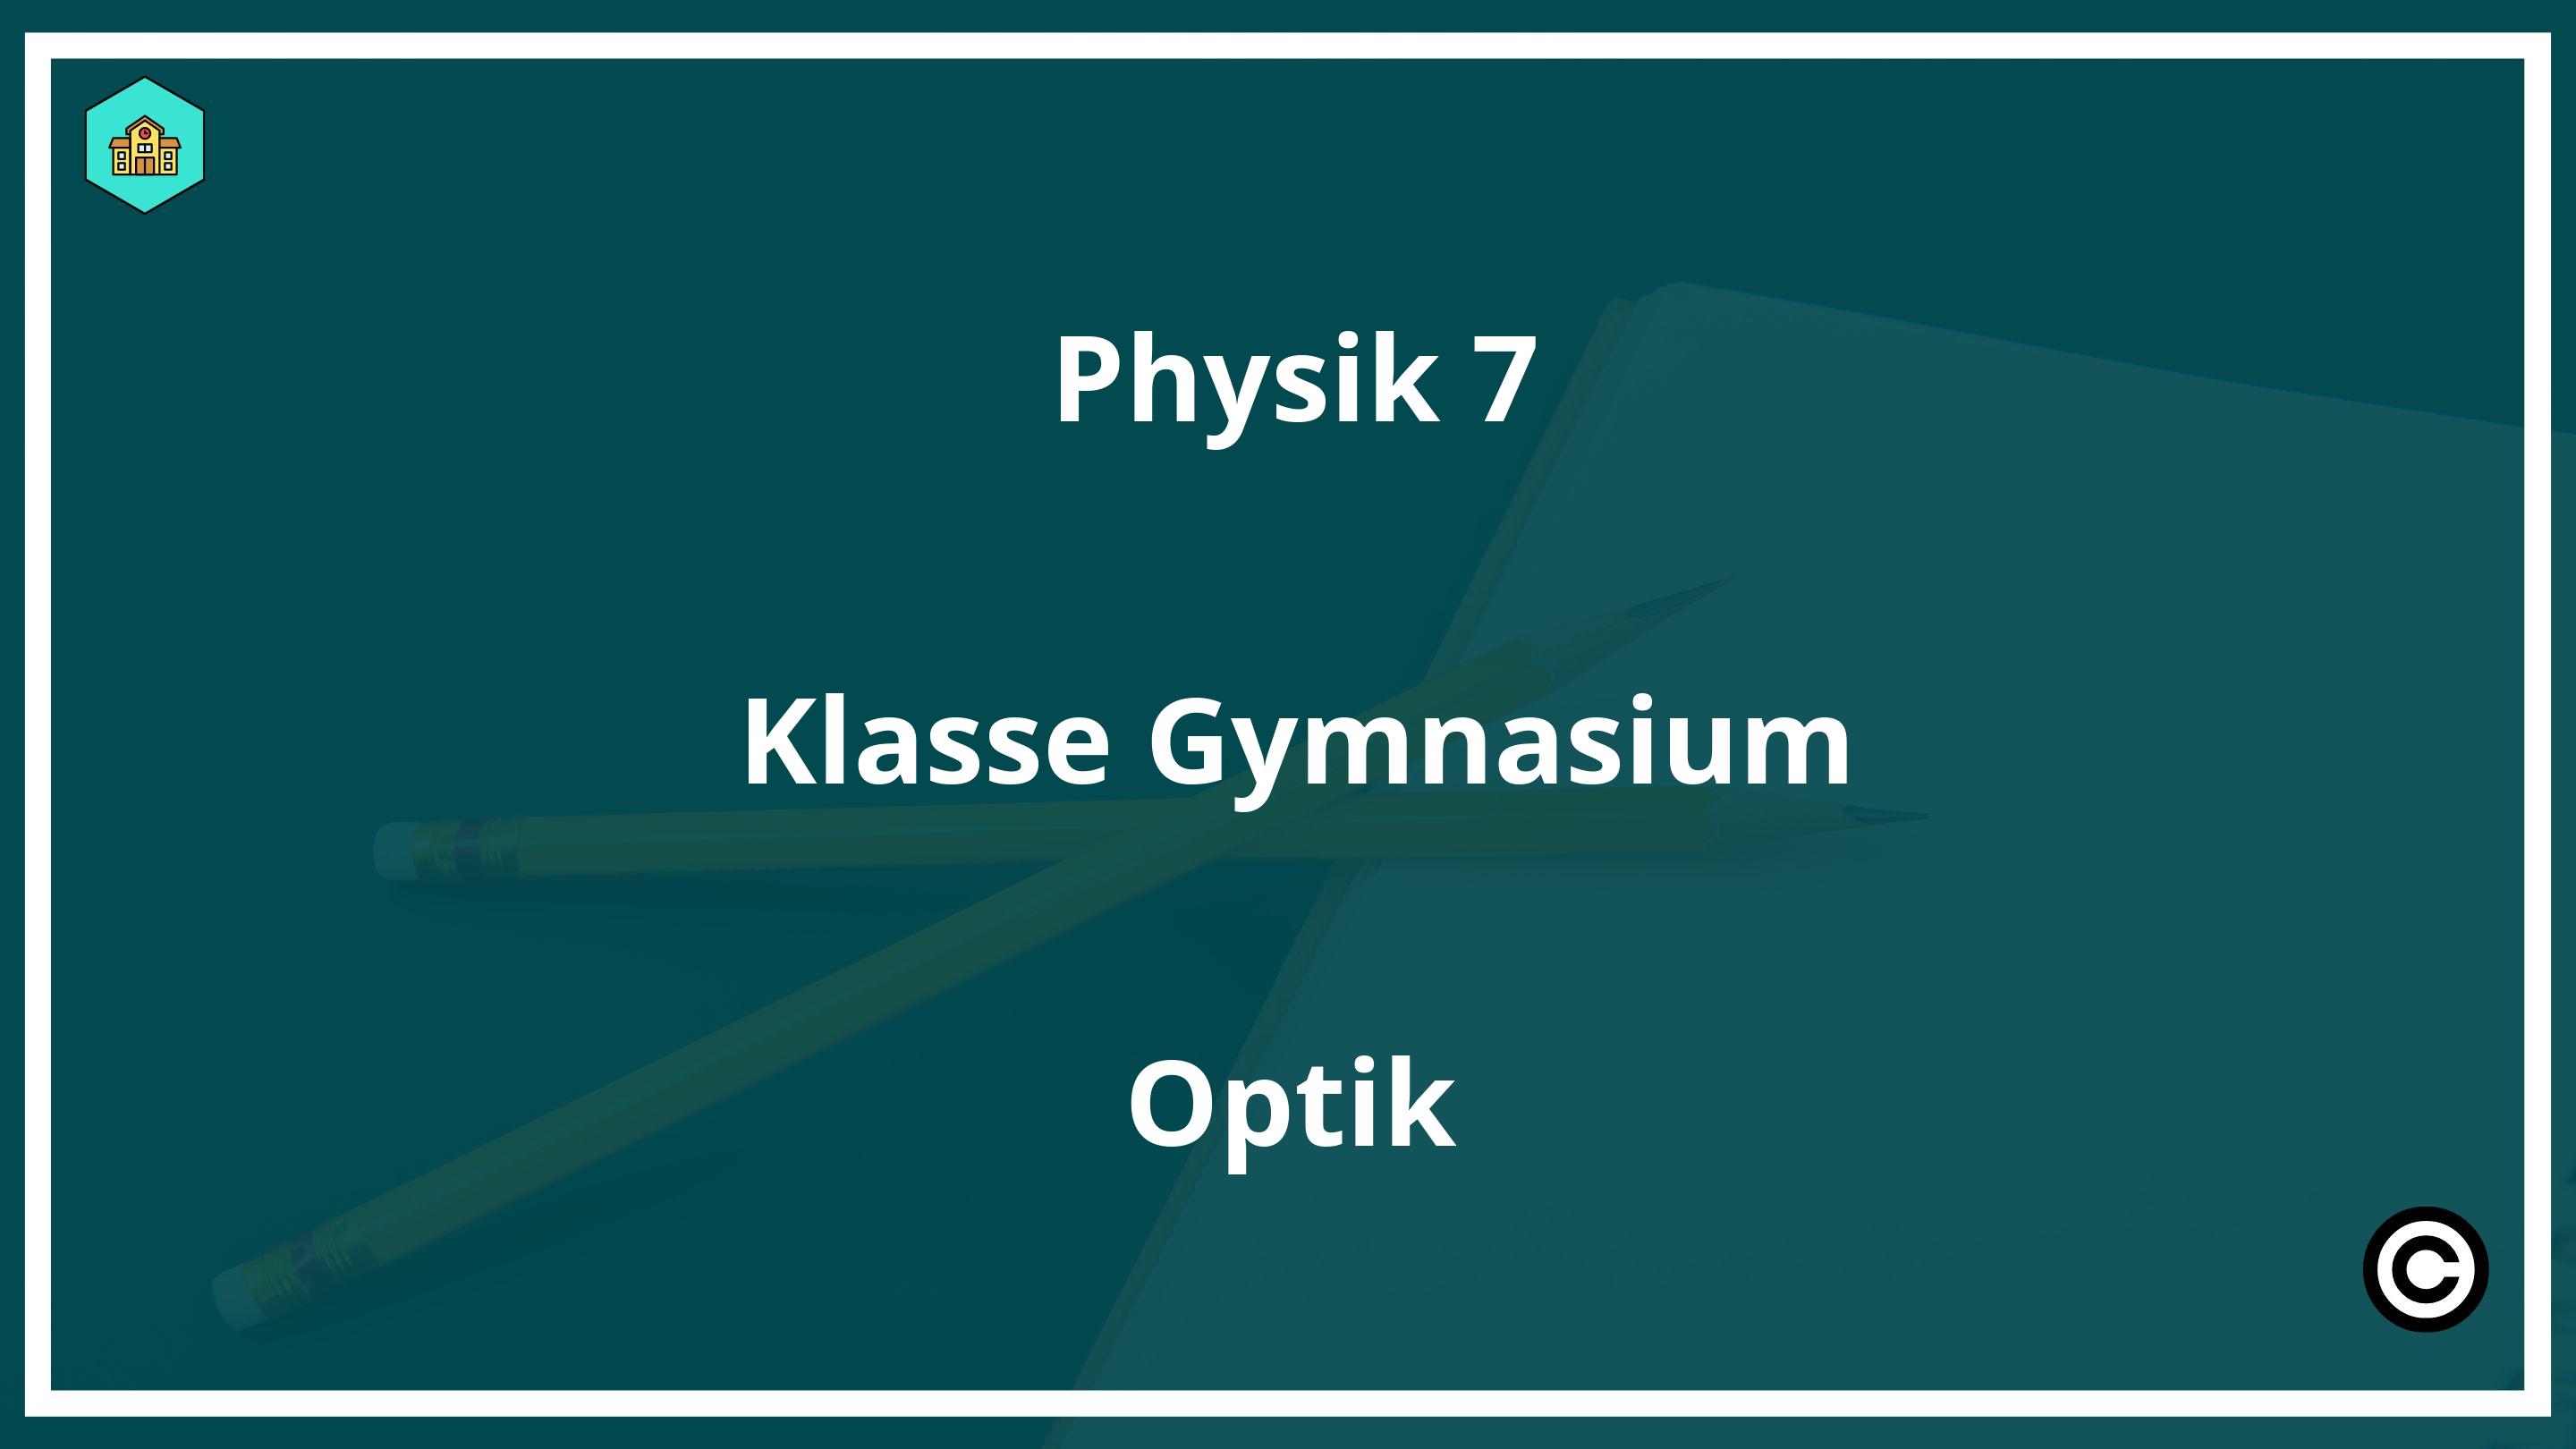 Physik 7 Klasse Realschule Kräfte PDF